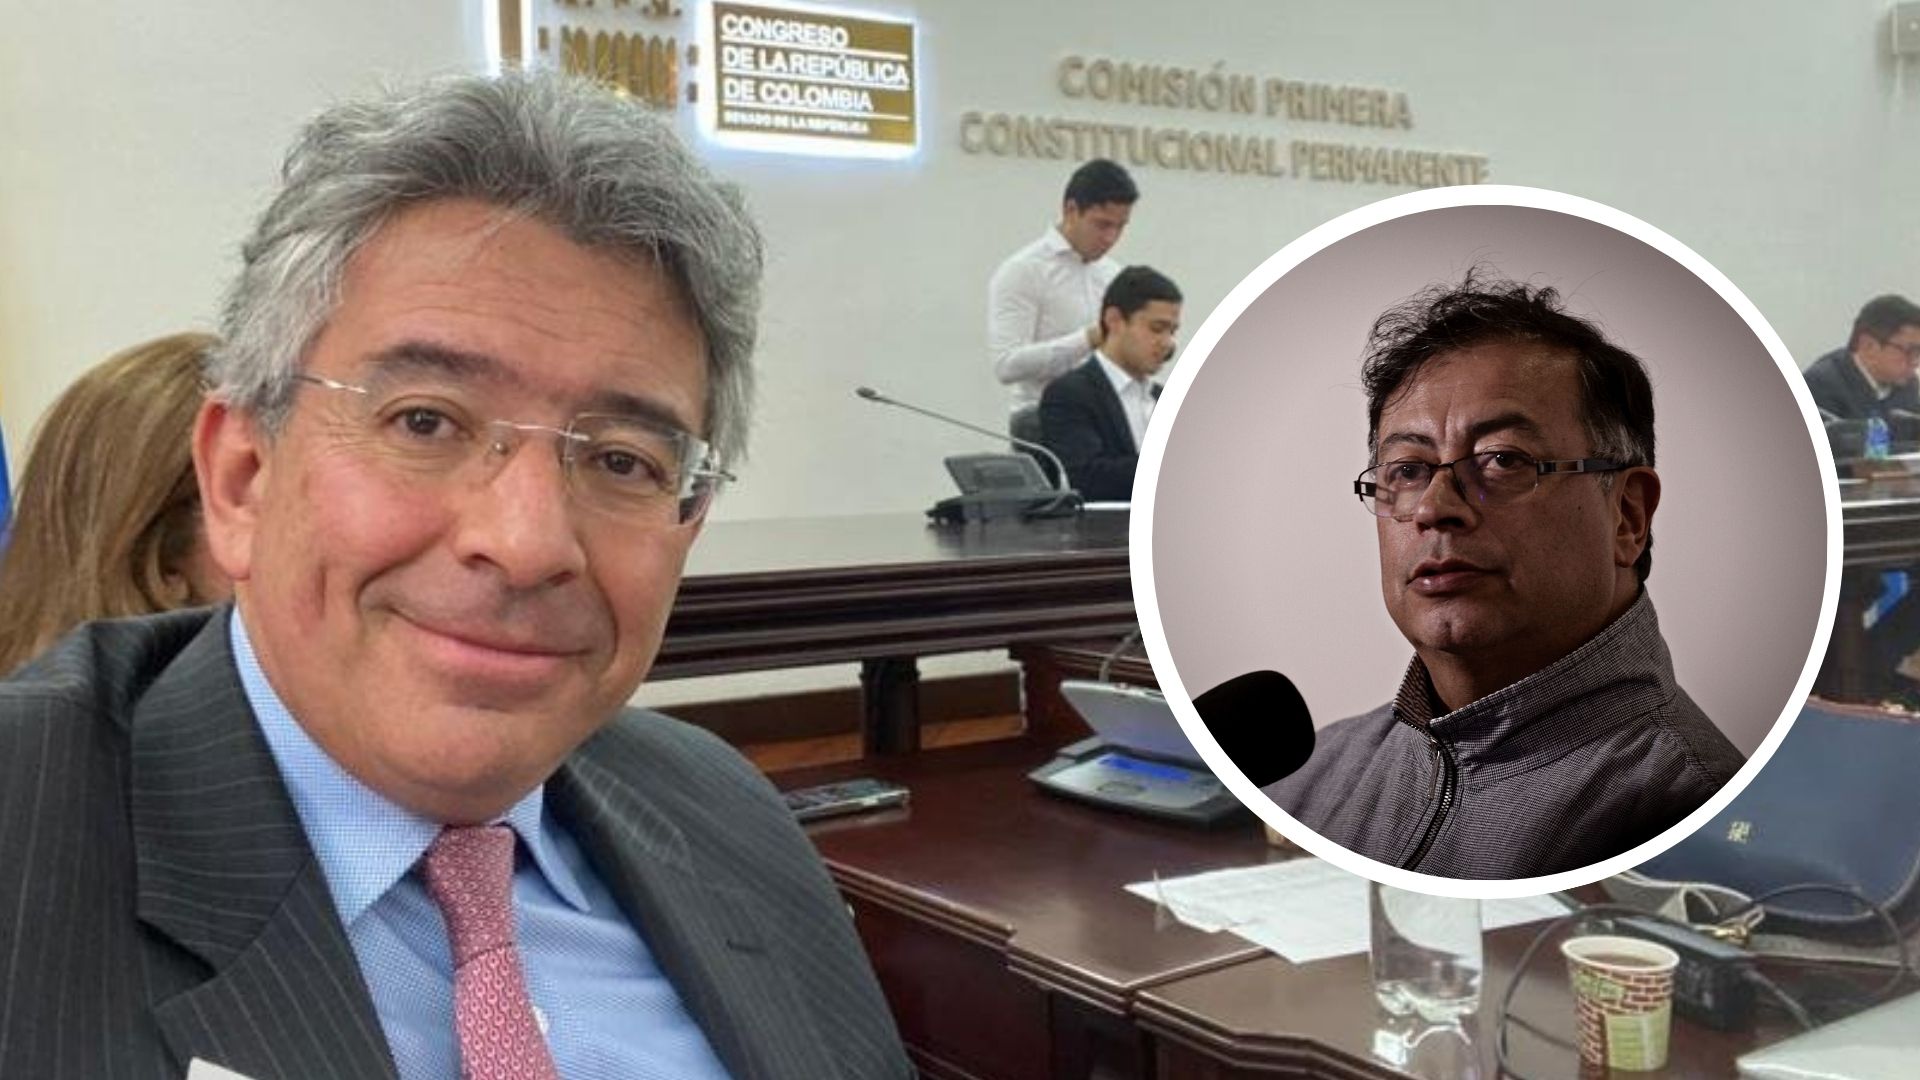 El excandidato presidencial sostuvo que "La dictadura en Colombia, si no actuamos políticamente ya, llega porque llega”. Fotos: @Enrique_GomezM / Colprensa